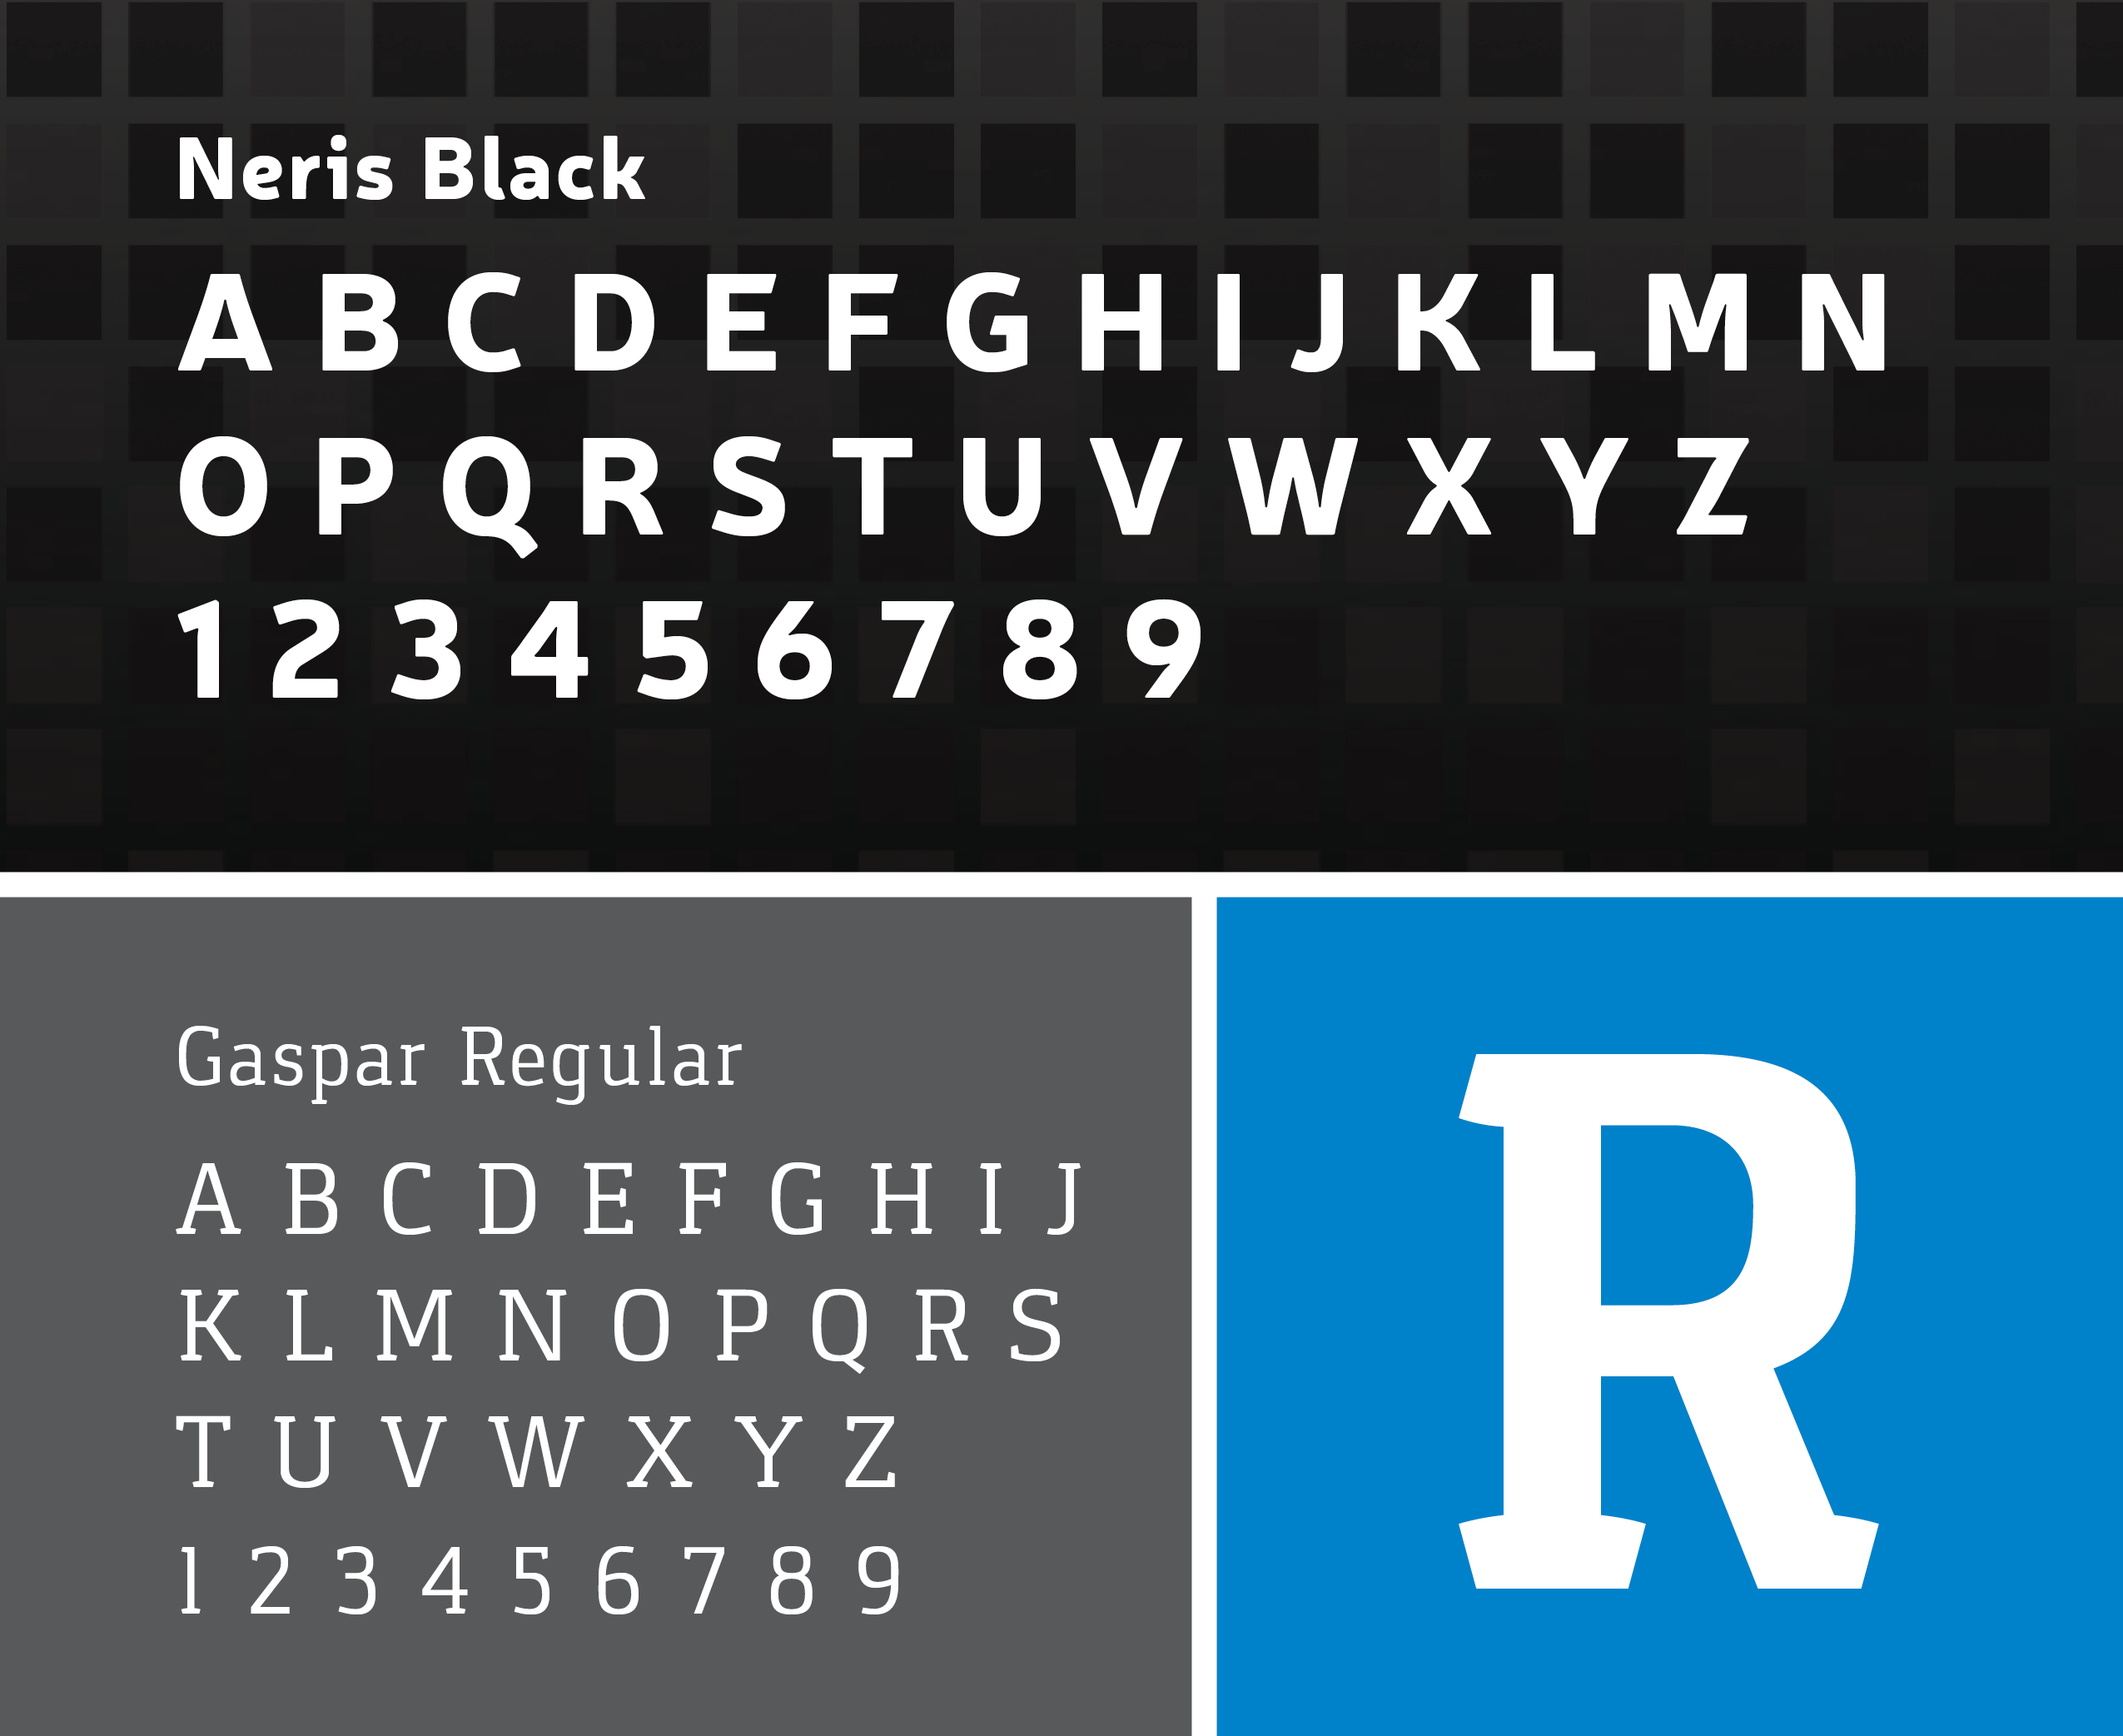 RWL typefaces